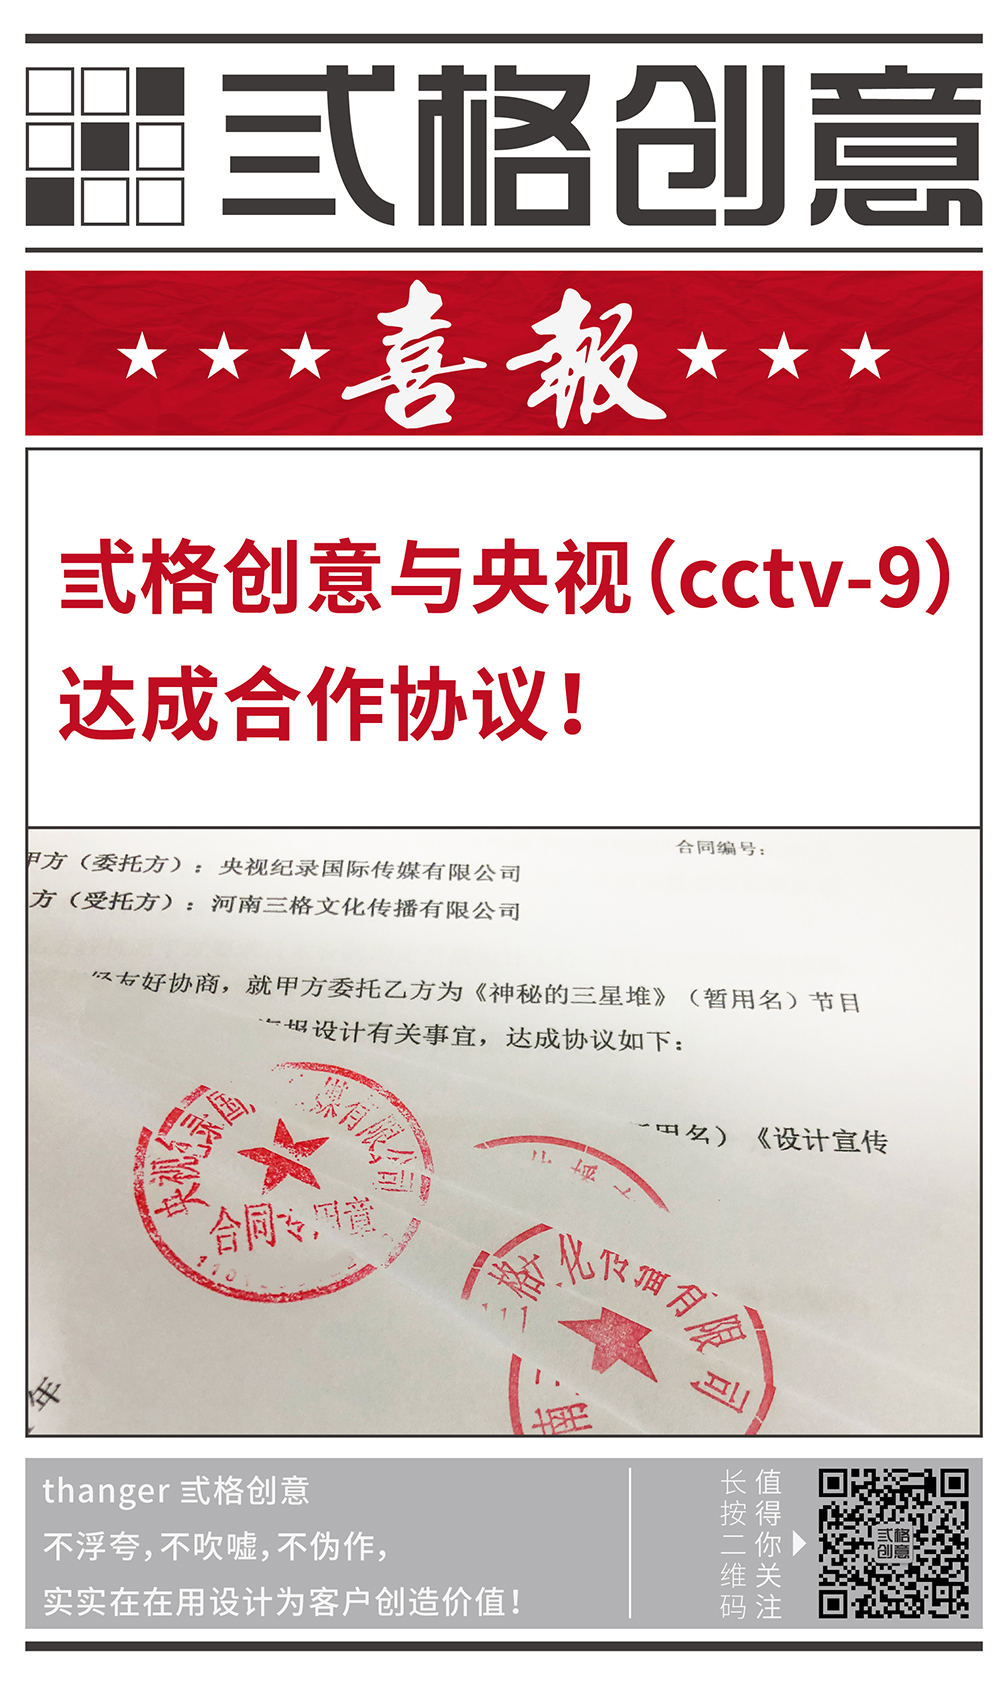 签约动态-CCTV9-大图.jpg